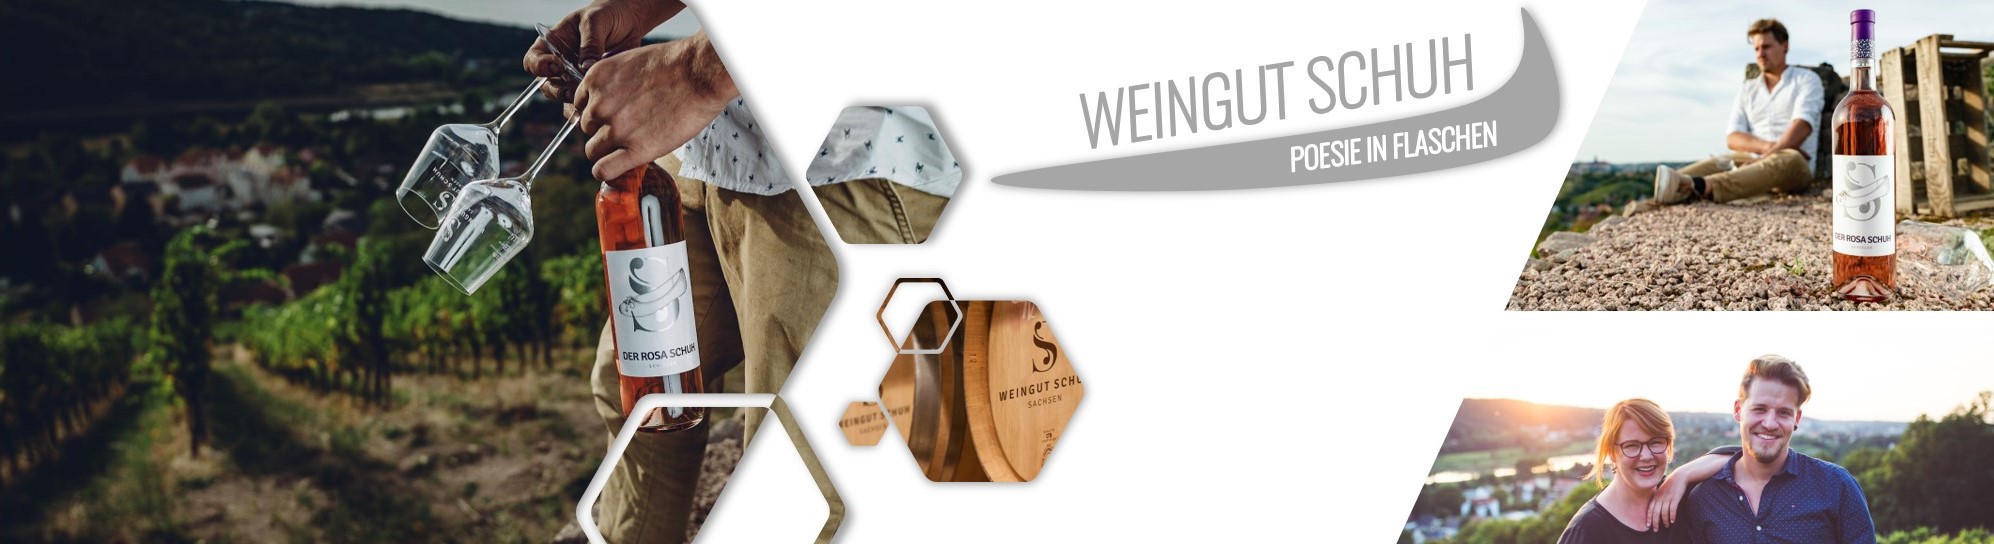 Weingut Schuh - die besten schsischen Weine online kaufen unter www.dresden-onlineshop.de